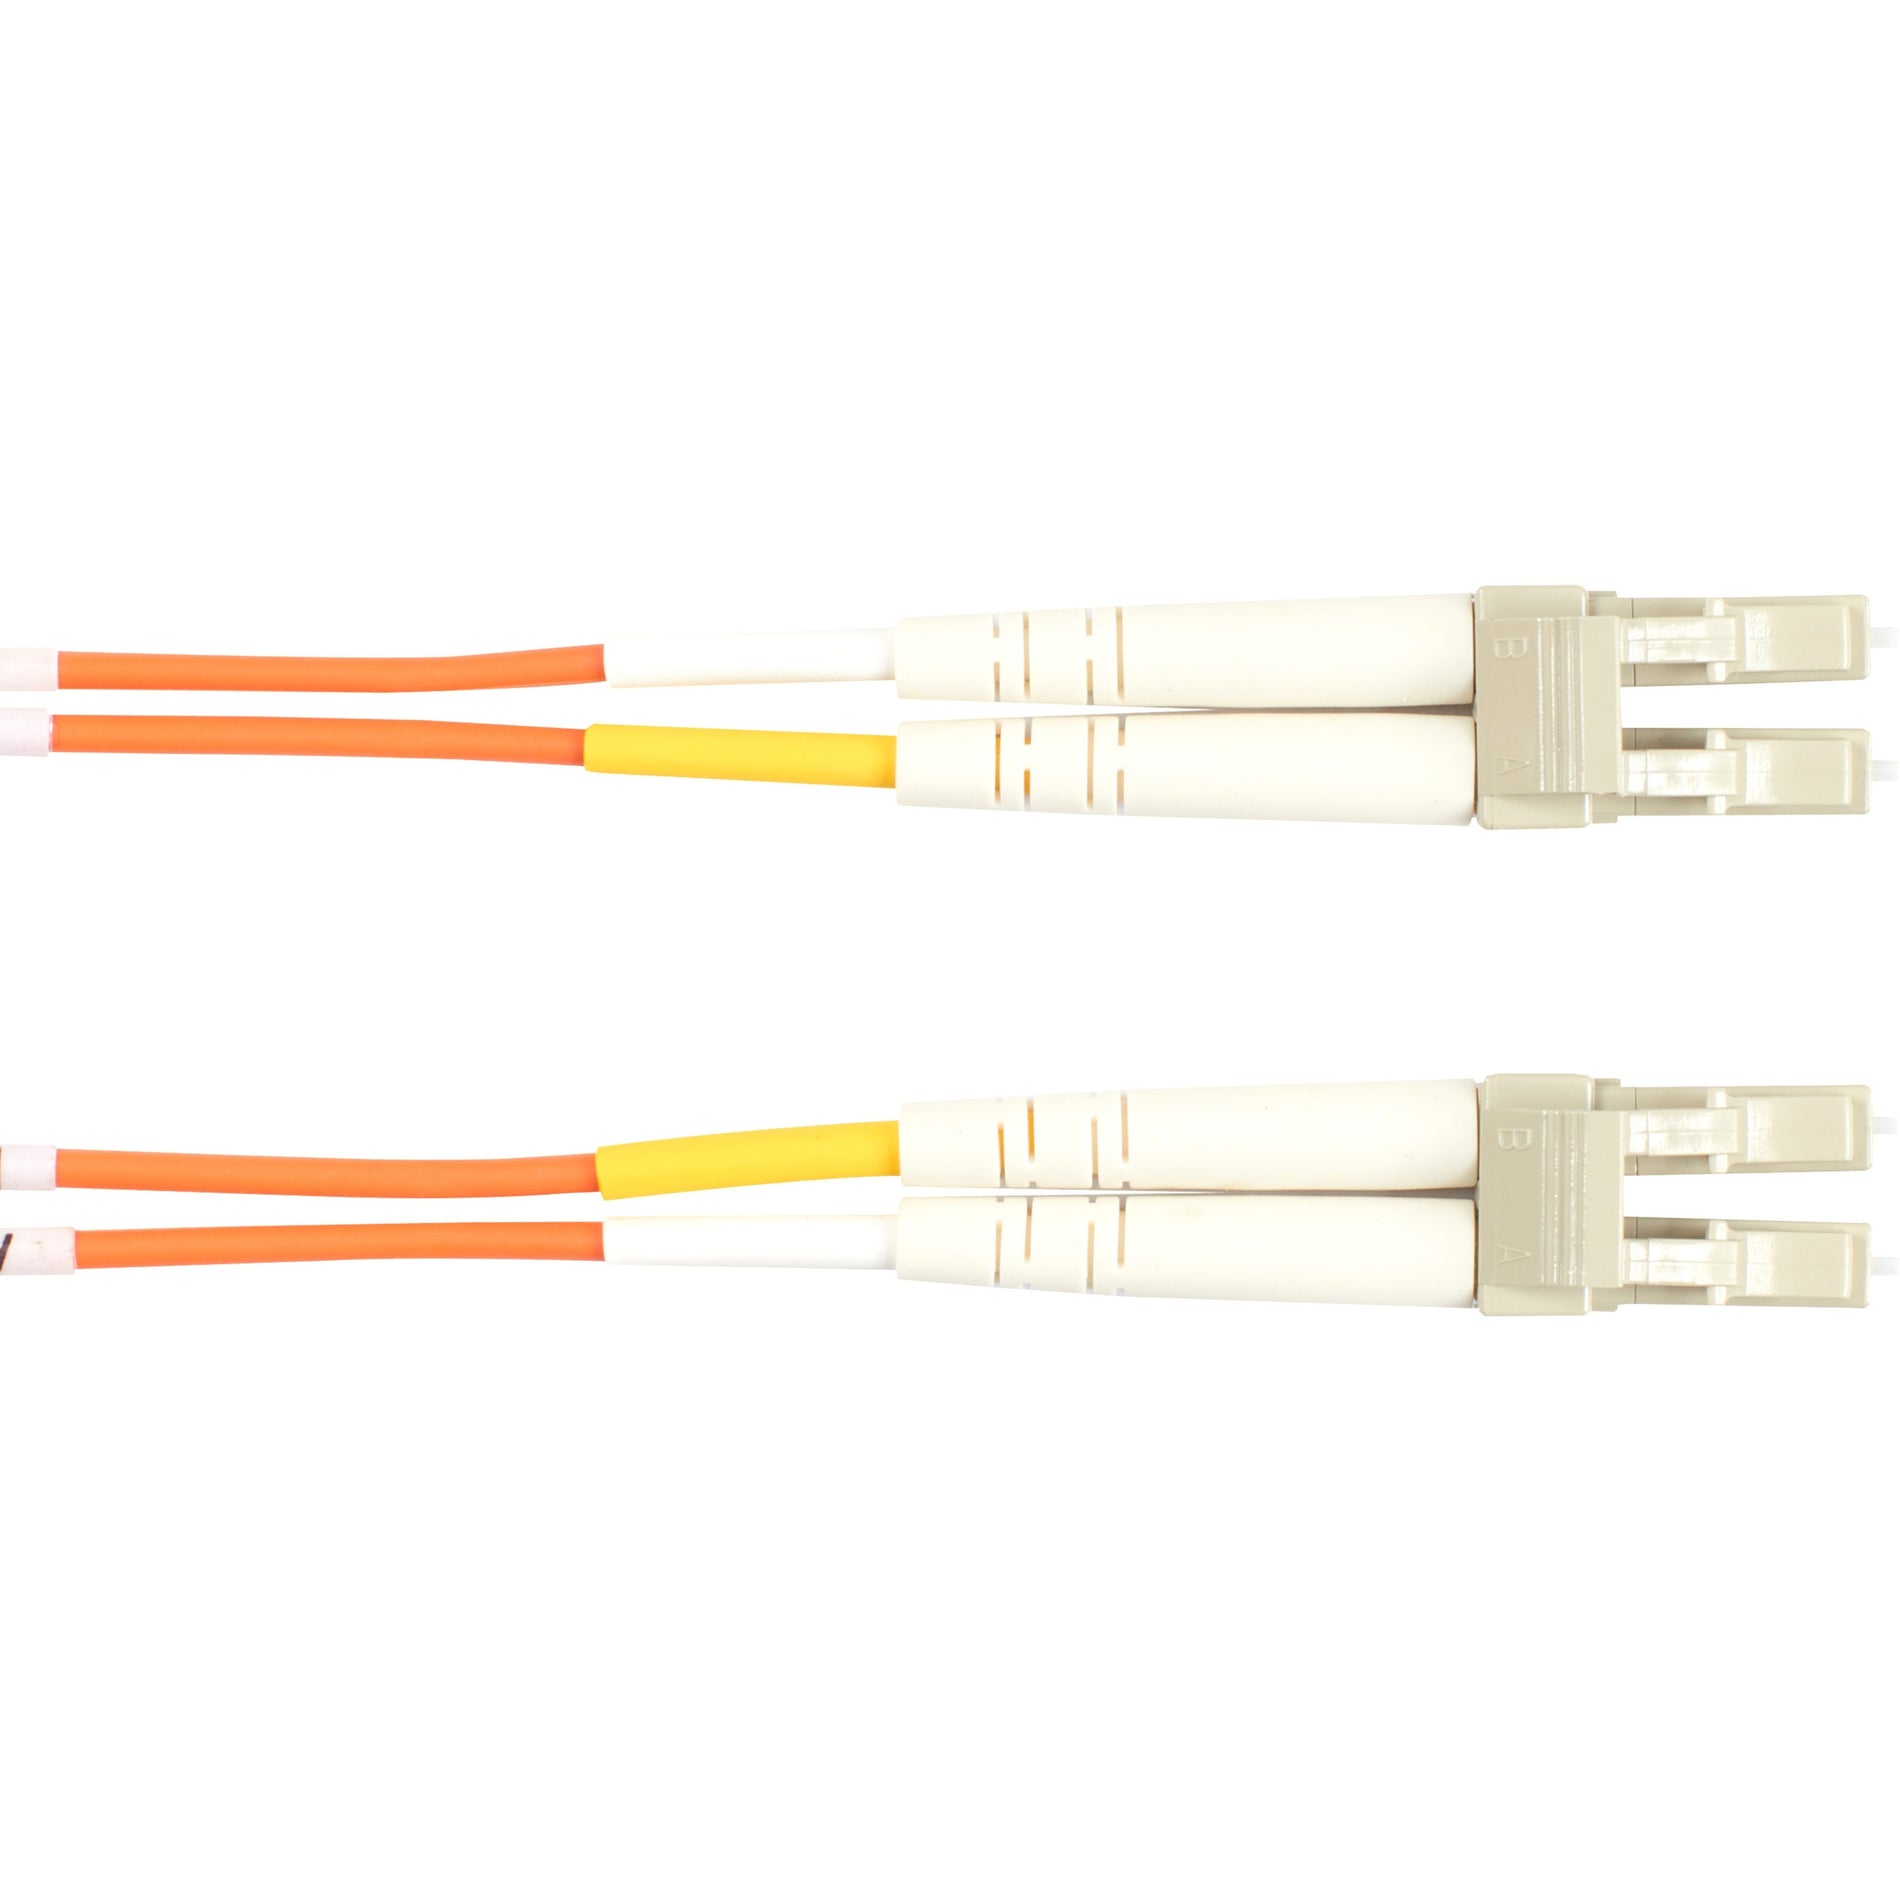 Black Box EFN110-001M-LCLC Fiber Optic Duplex Patch Network Cable, Multi-mode, 3.20 ft, Orange